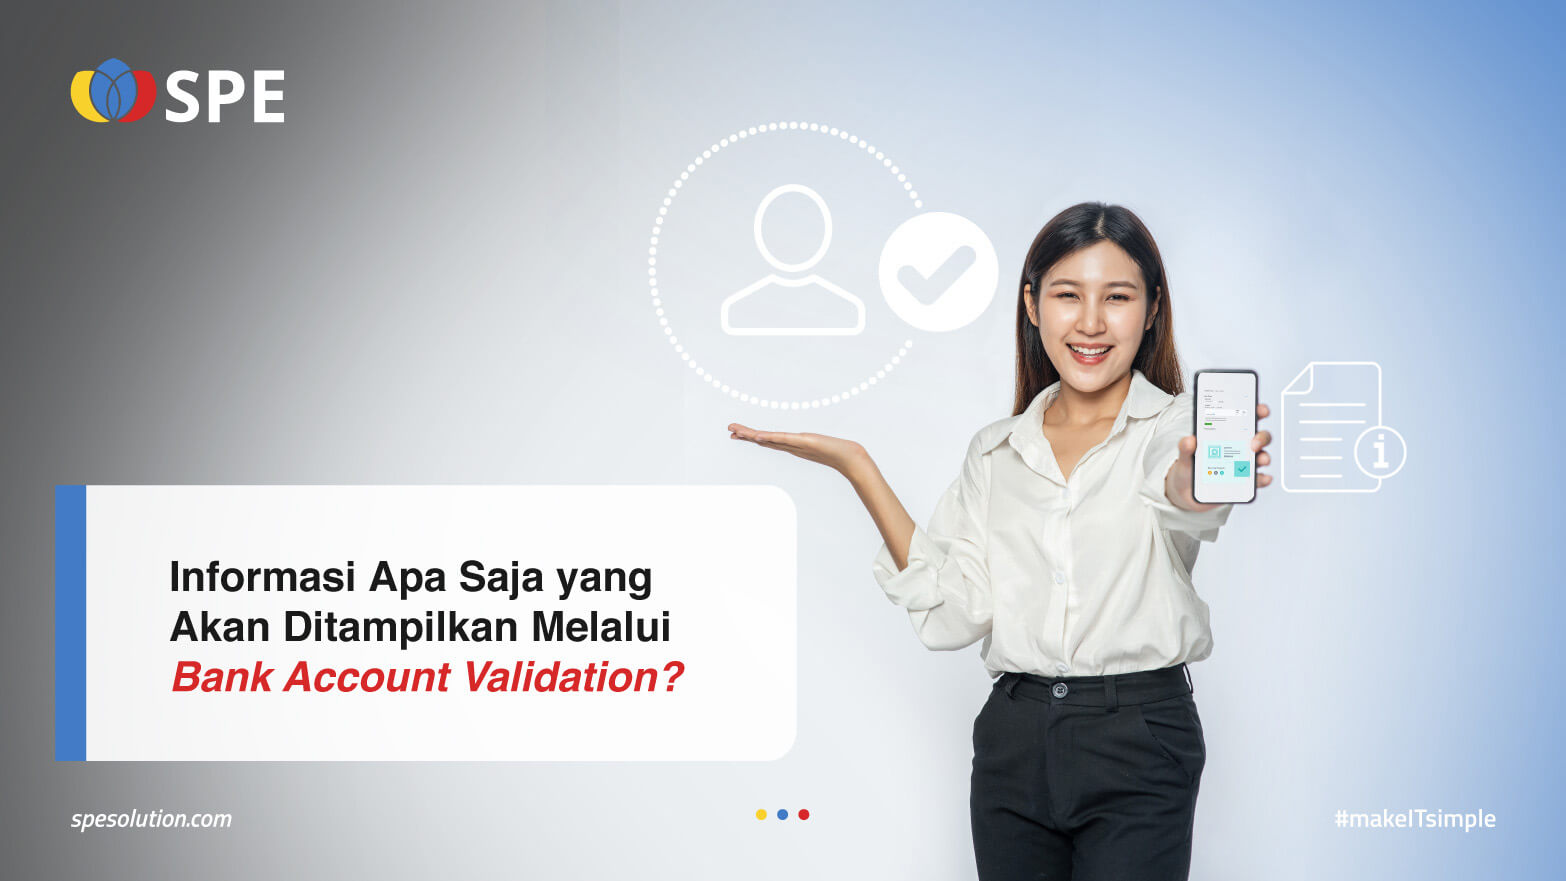 Informasi Apa Saja yang Akan Ditampilkan Melalui Bank Account Validation?